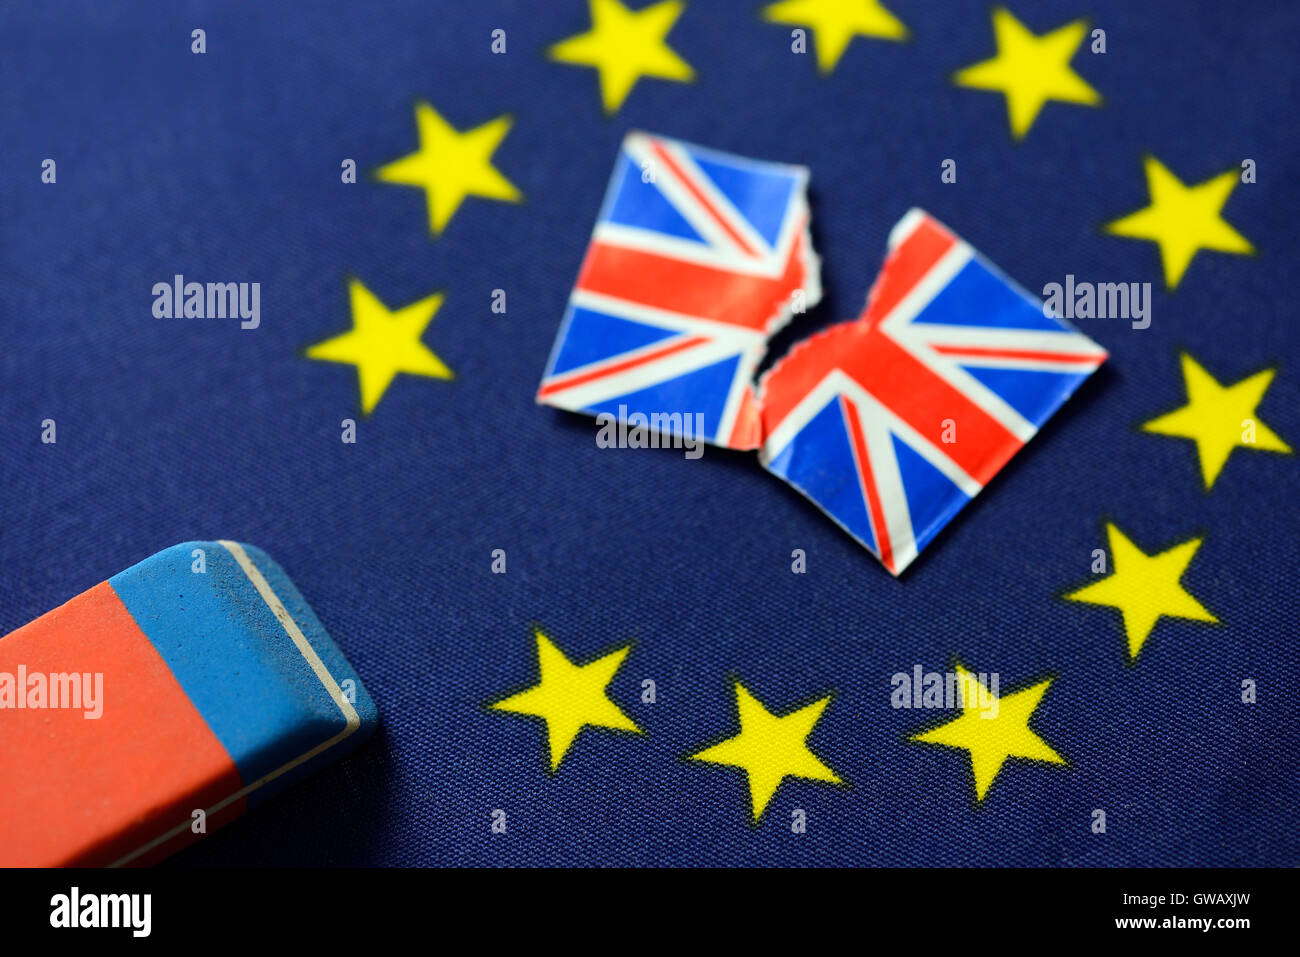 Drapeau de l'UE avec les étoiles effacées, photo symbolique Brexit, UE-Fahne mit ausradiertem Symbolfoto Brexit, Stern Banque D'Images